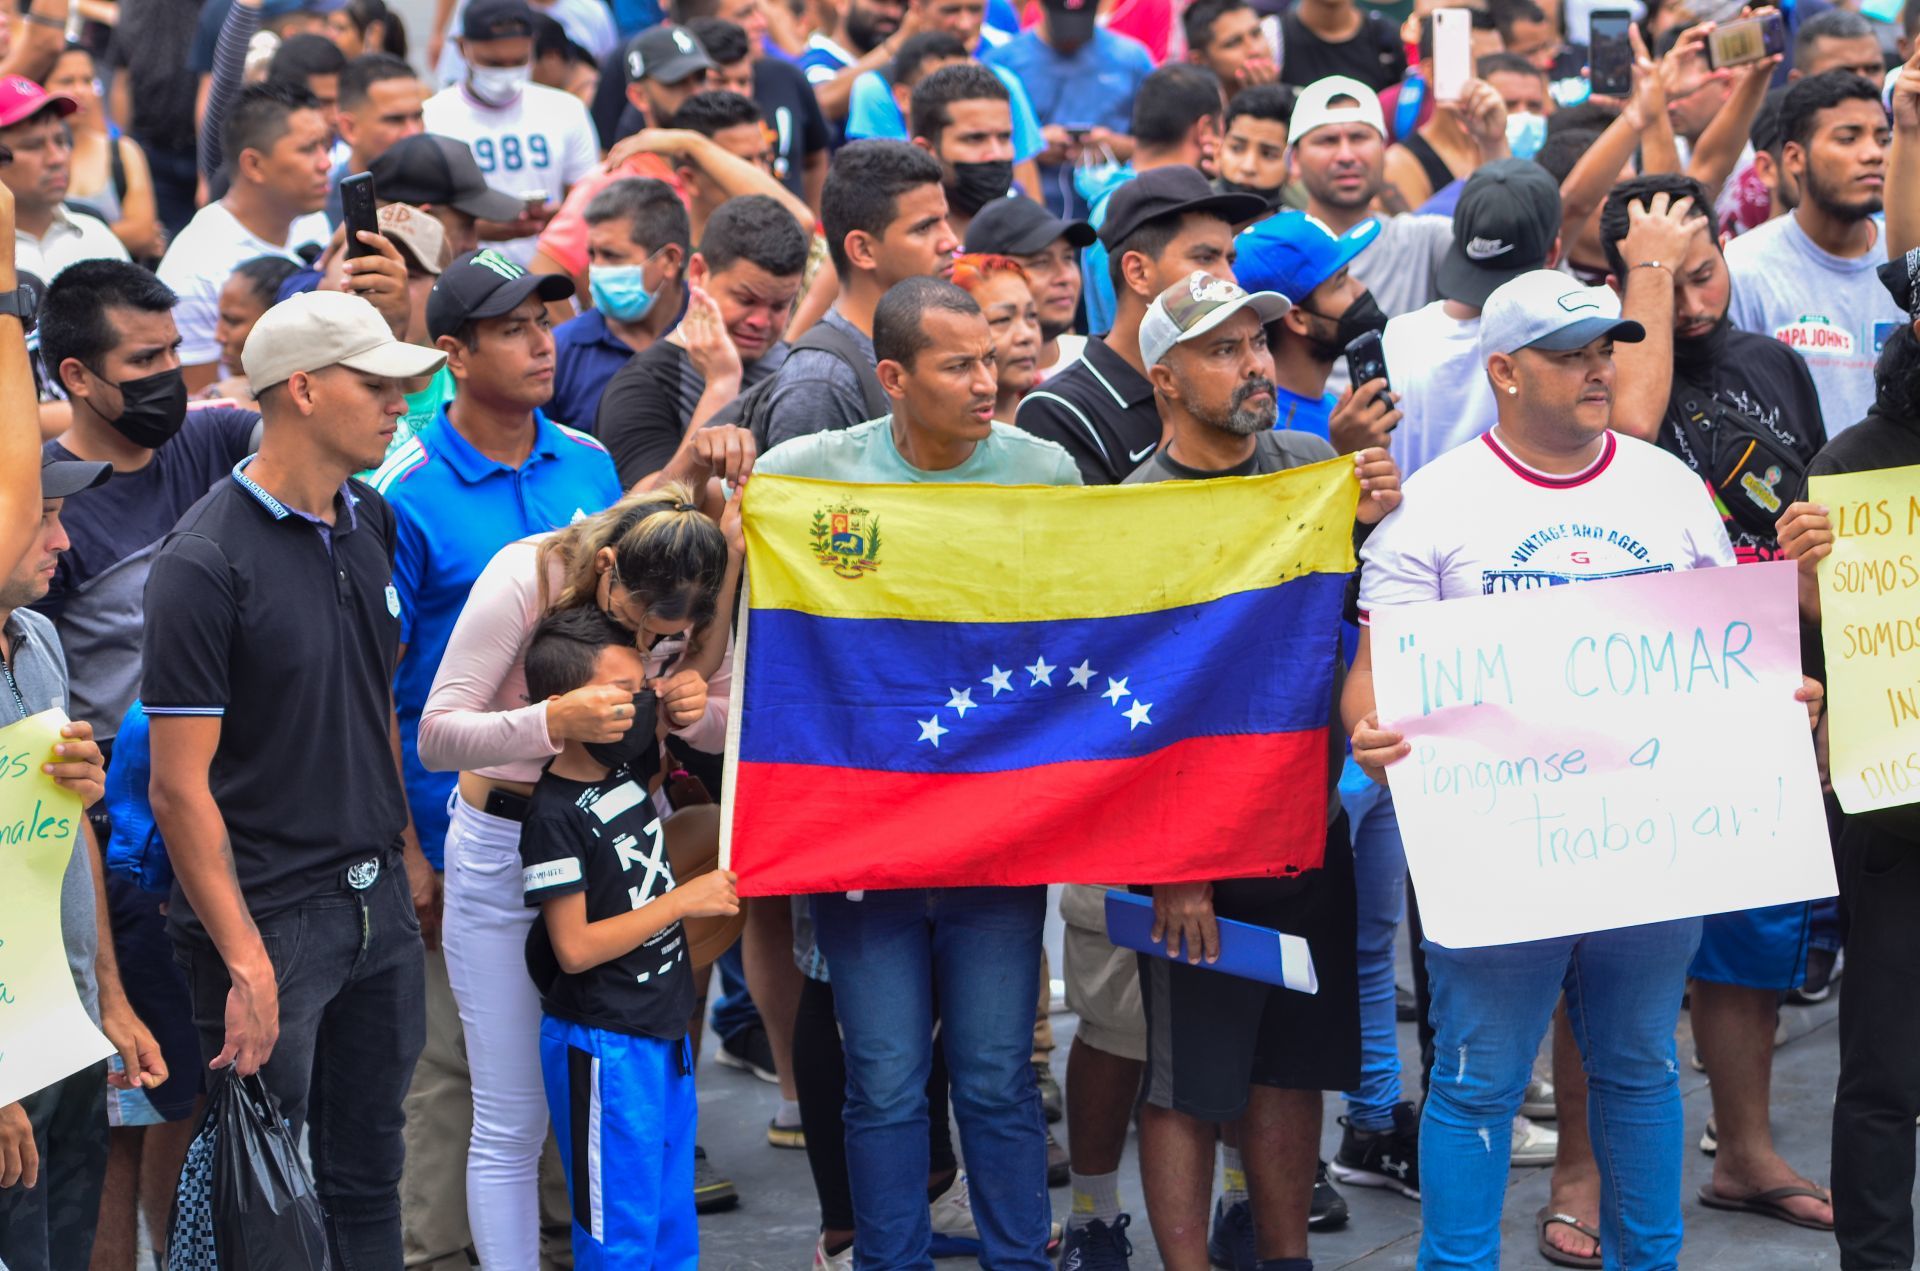 Venezolanos que ingresen a México en caravana no entrarán a EU